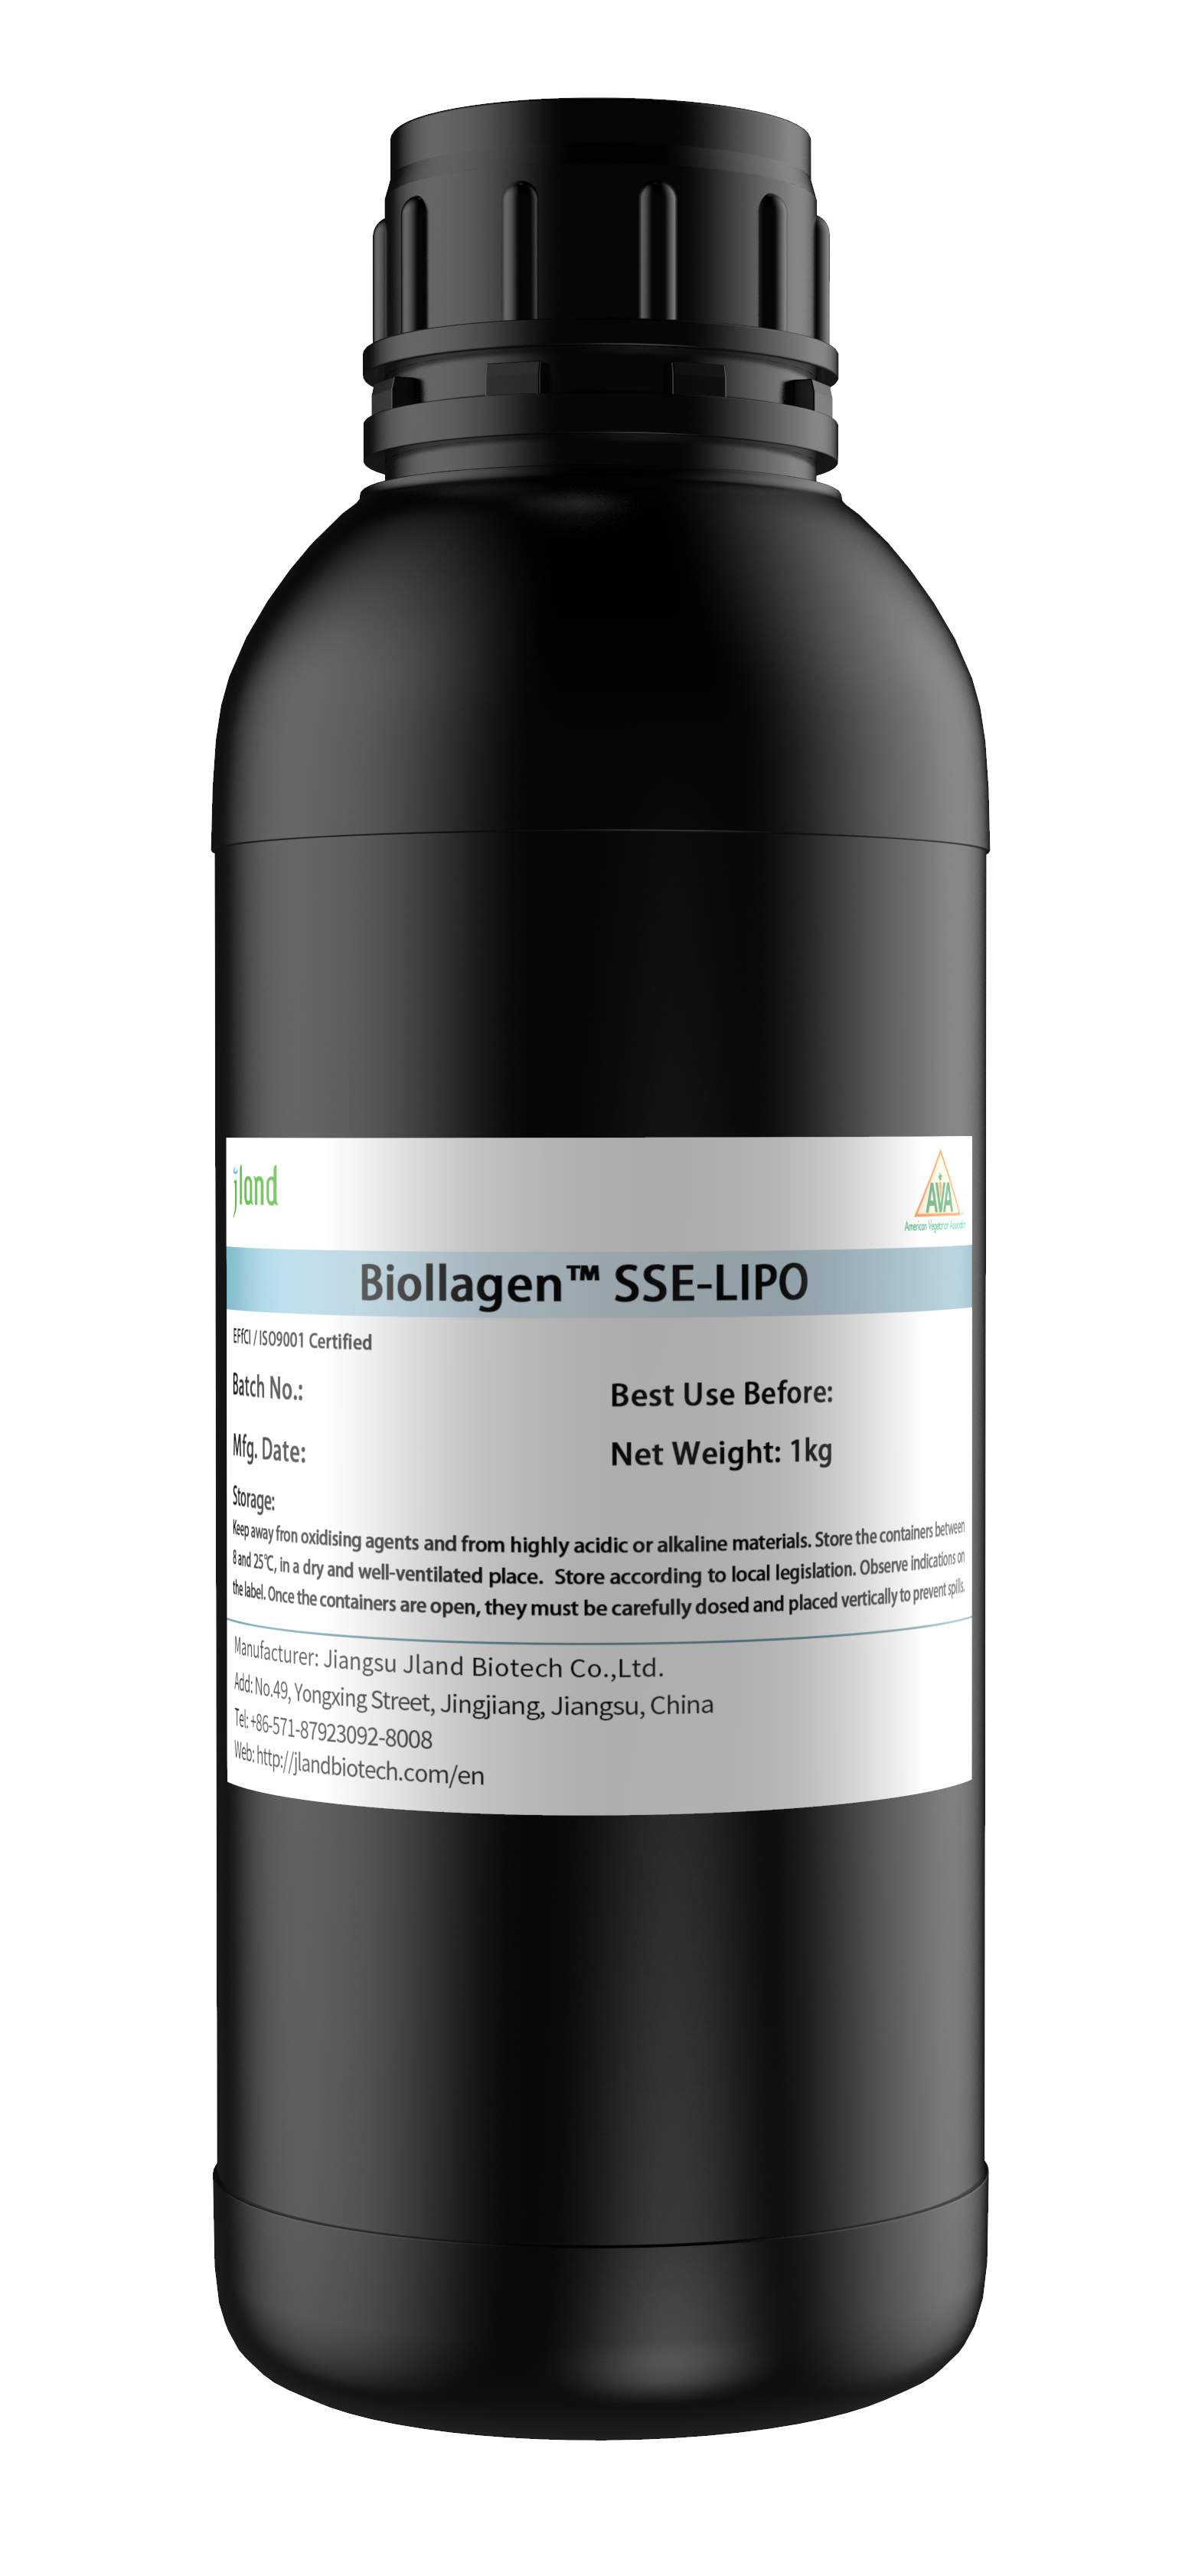 Jland Biotech launches a unique Biollagen-Lipo product